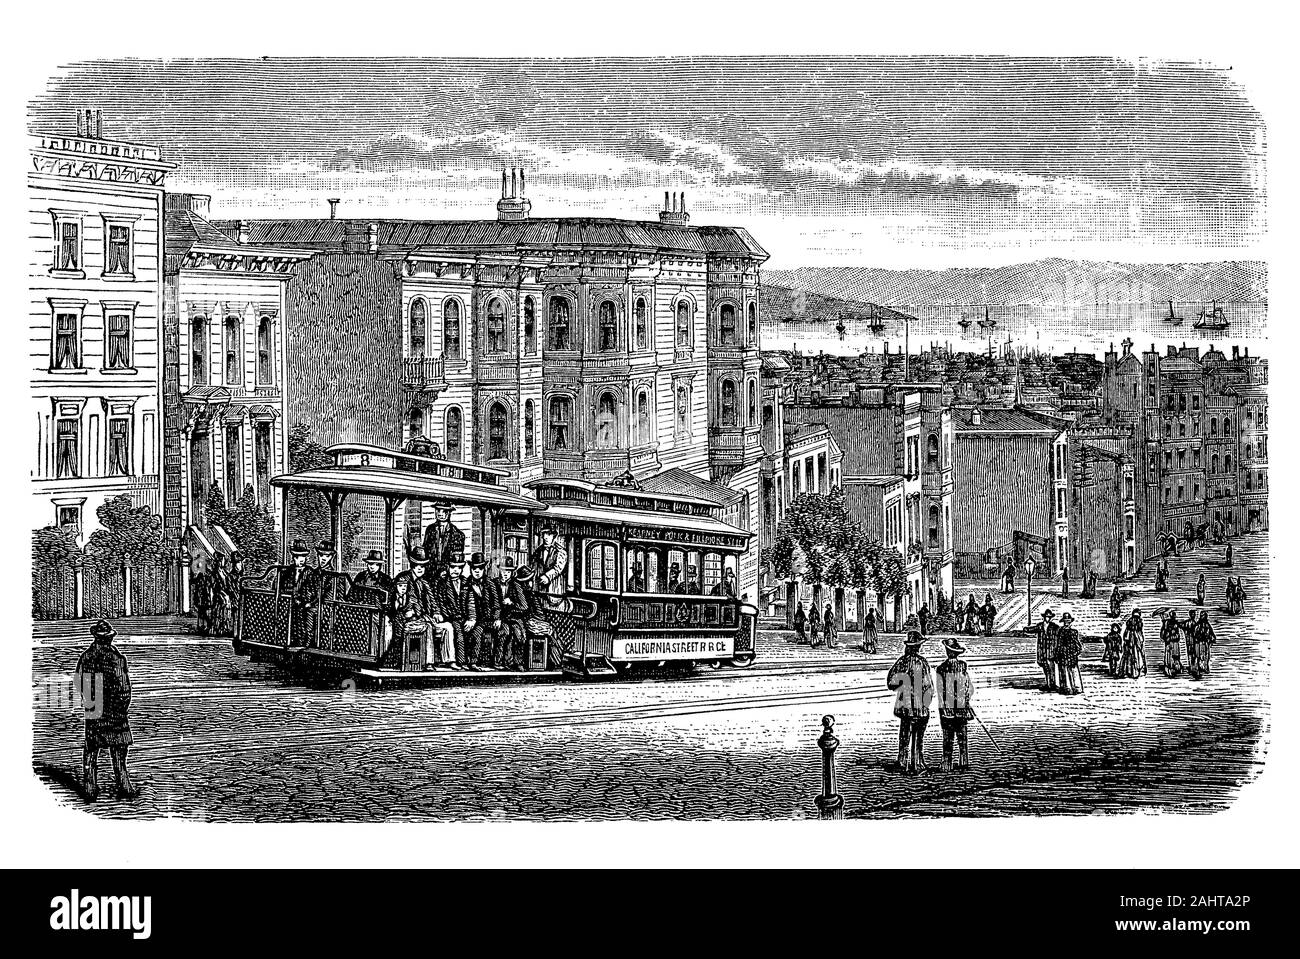 San Francisco cable car system, réseau de transport urbain à San Francisco avec 23 lignes à la fin du 19e siècle Banque D'Images